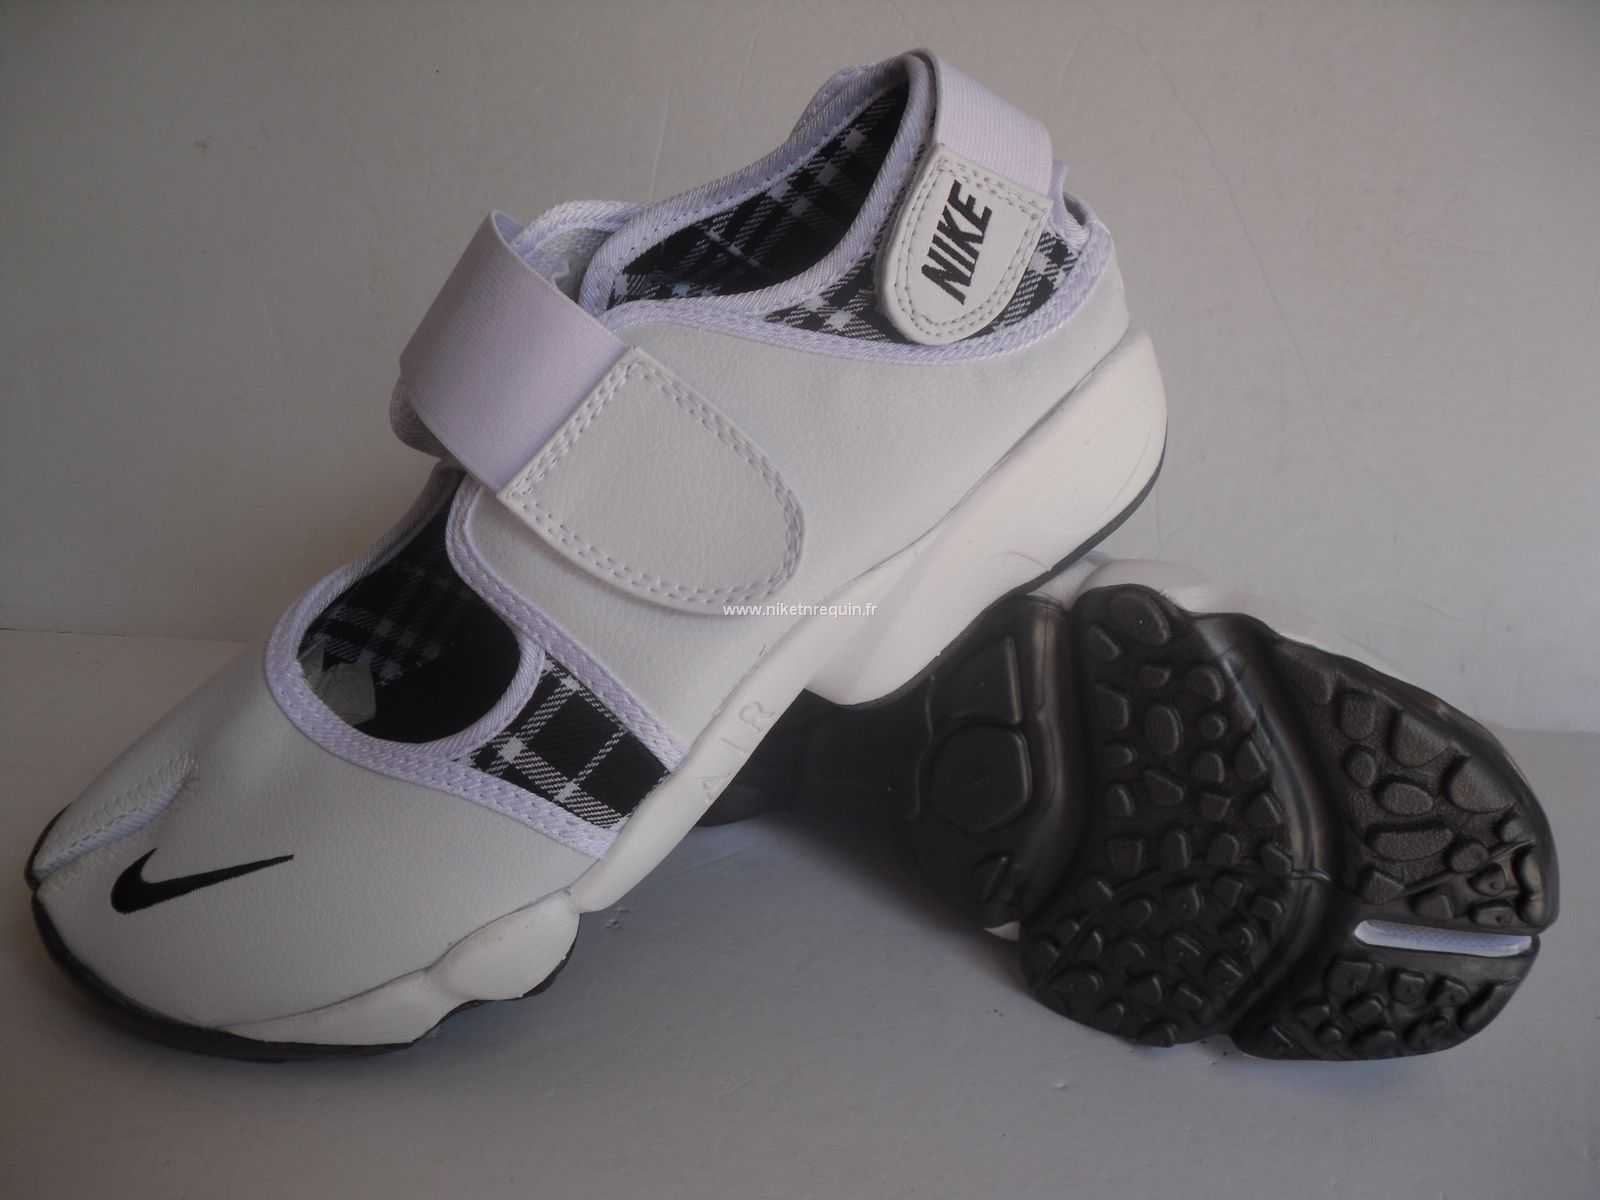 Desiner Chaussures Nike Shox Rift Blanc Balck